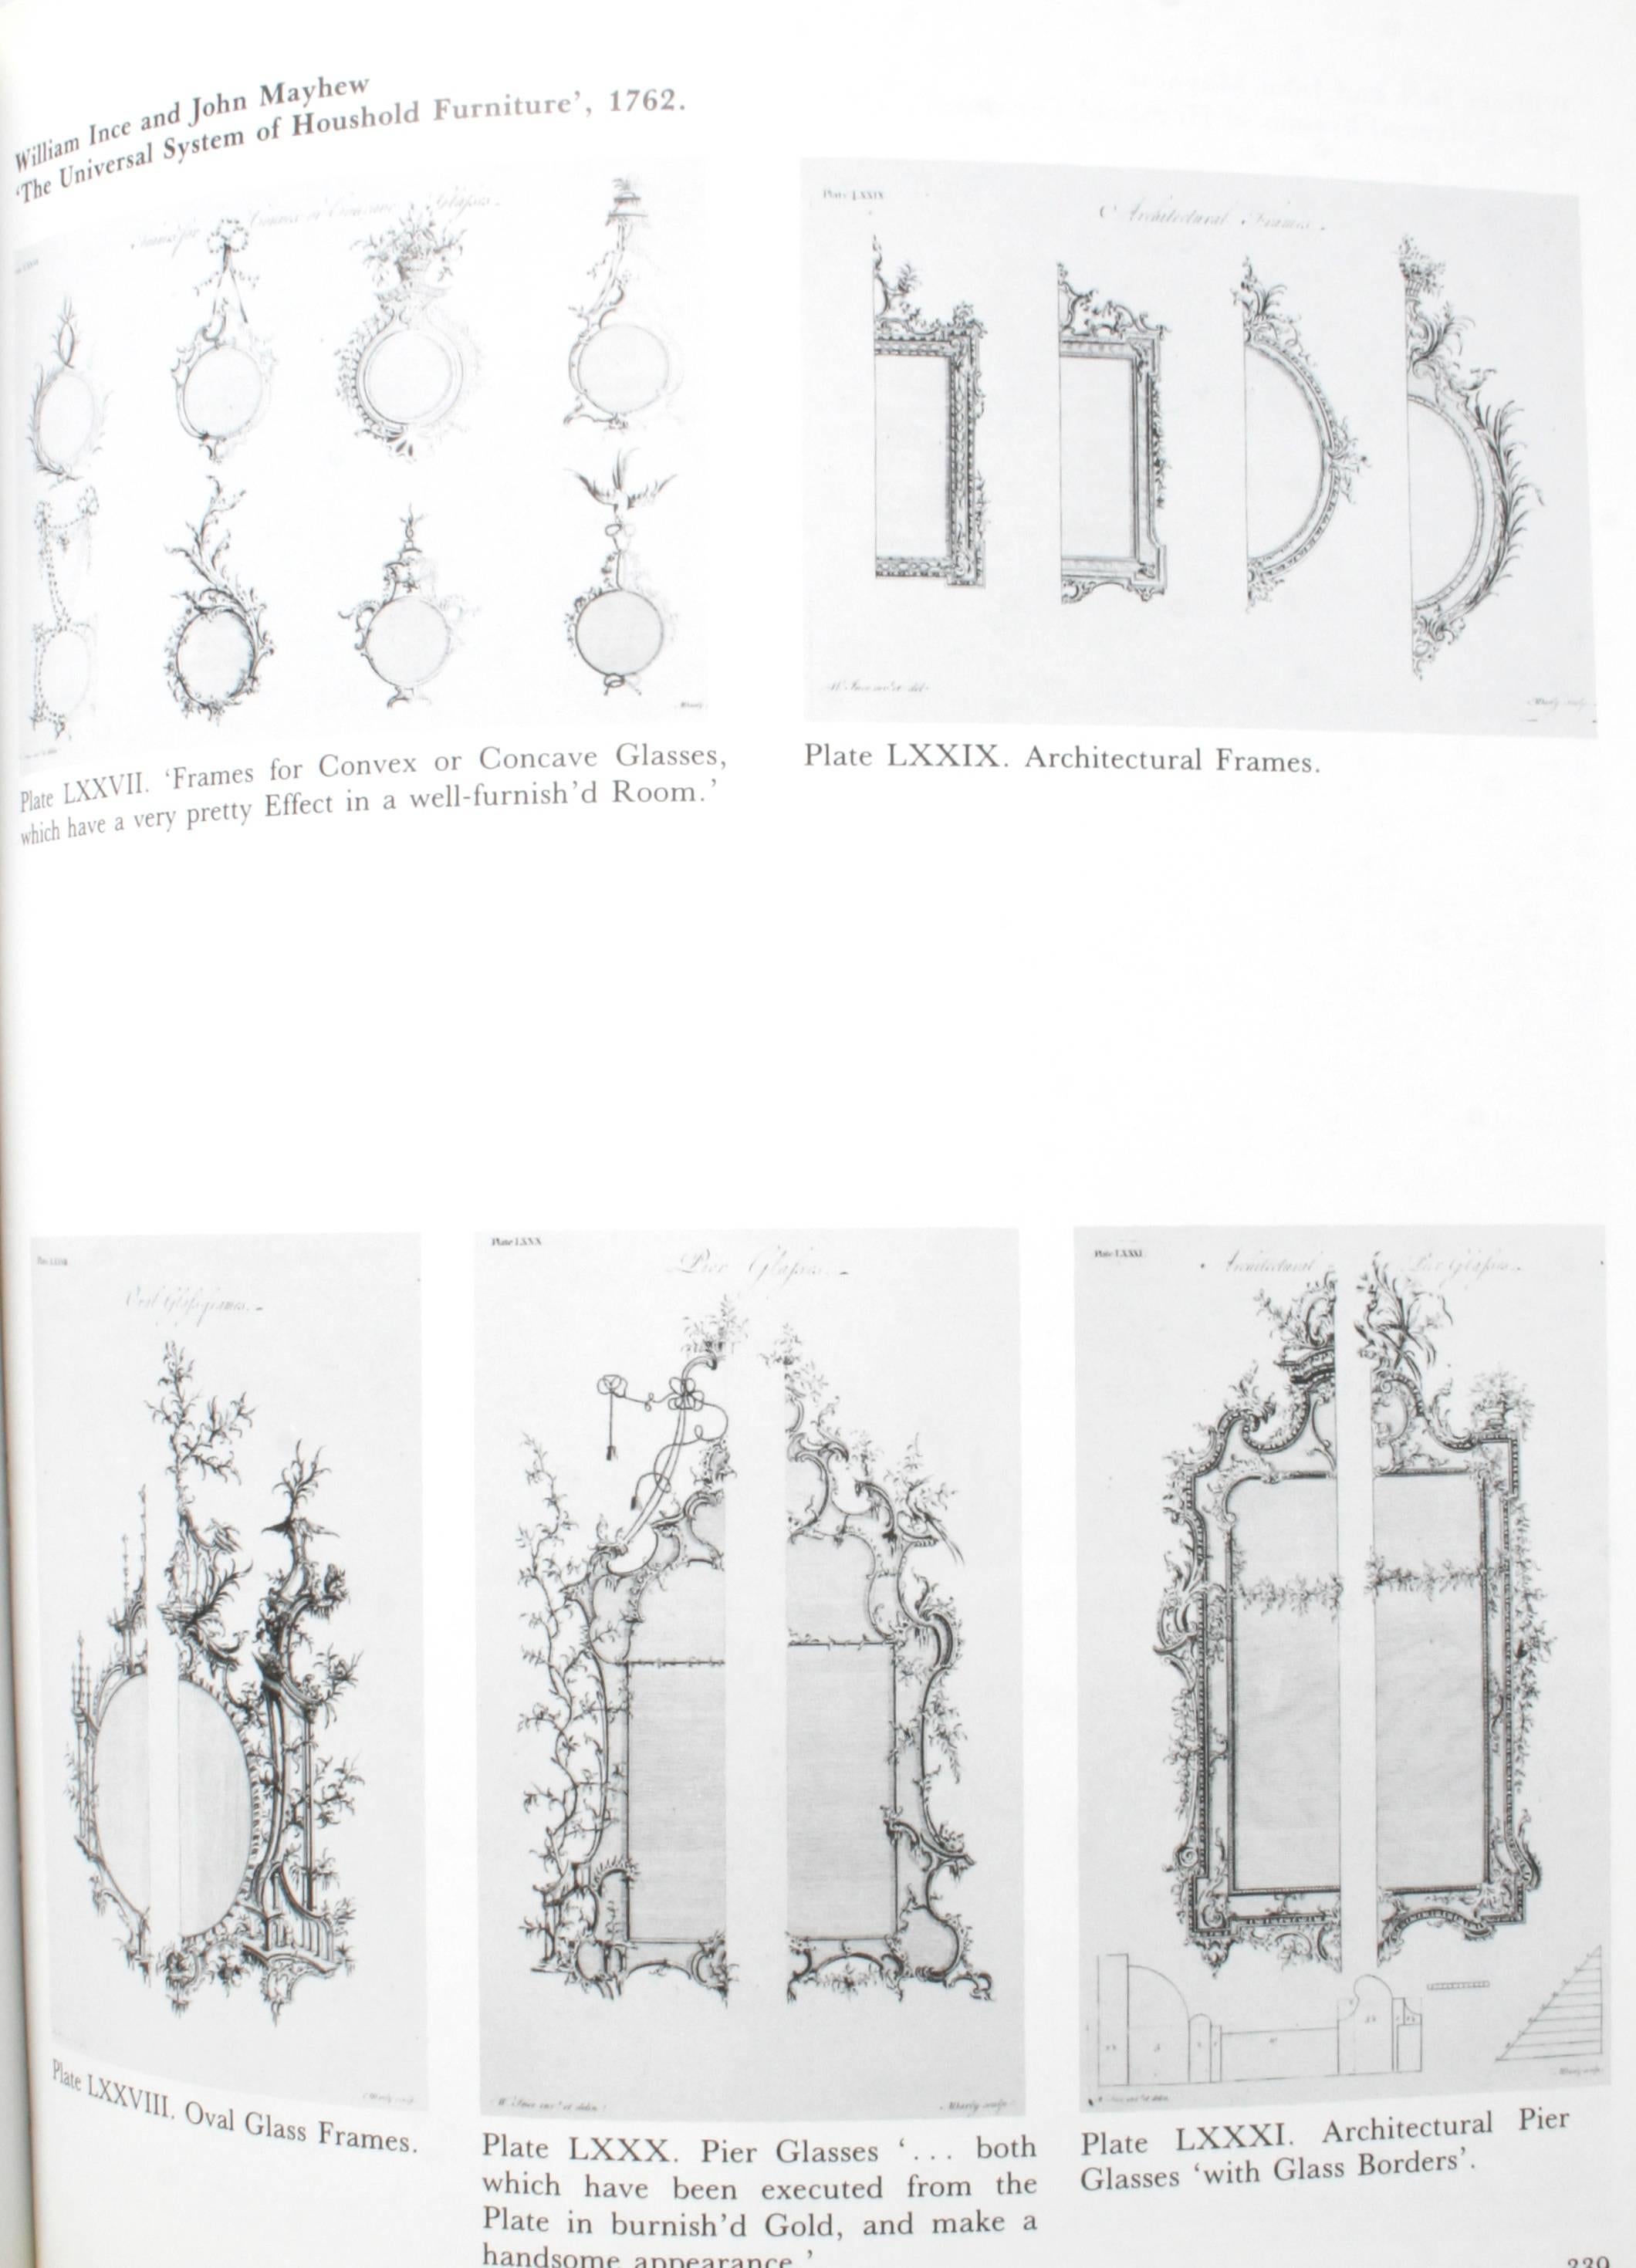 Pictorial Dictionary of British 18th Century Furniture Design 2